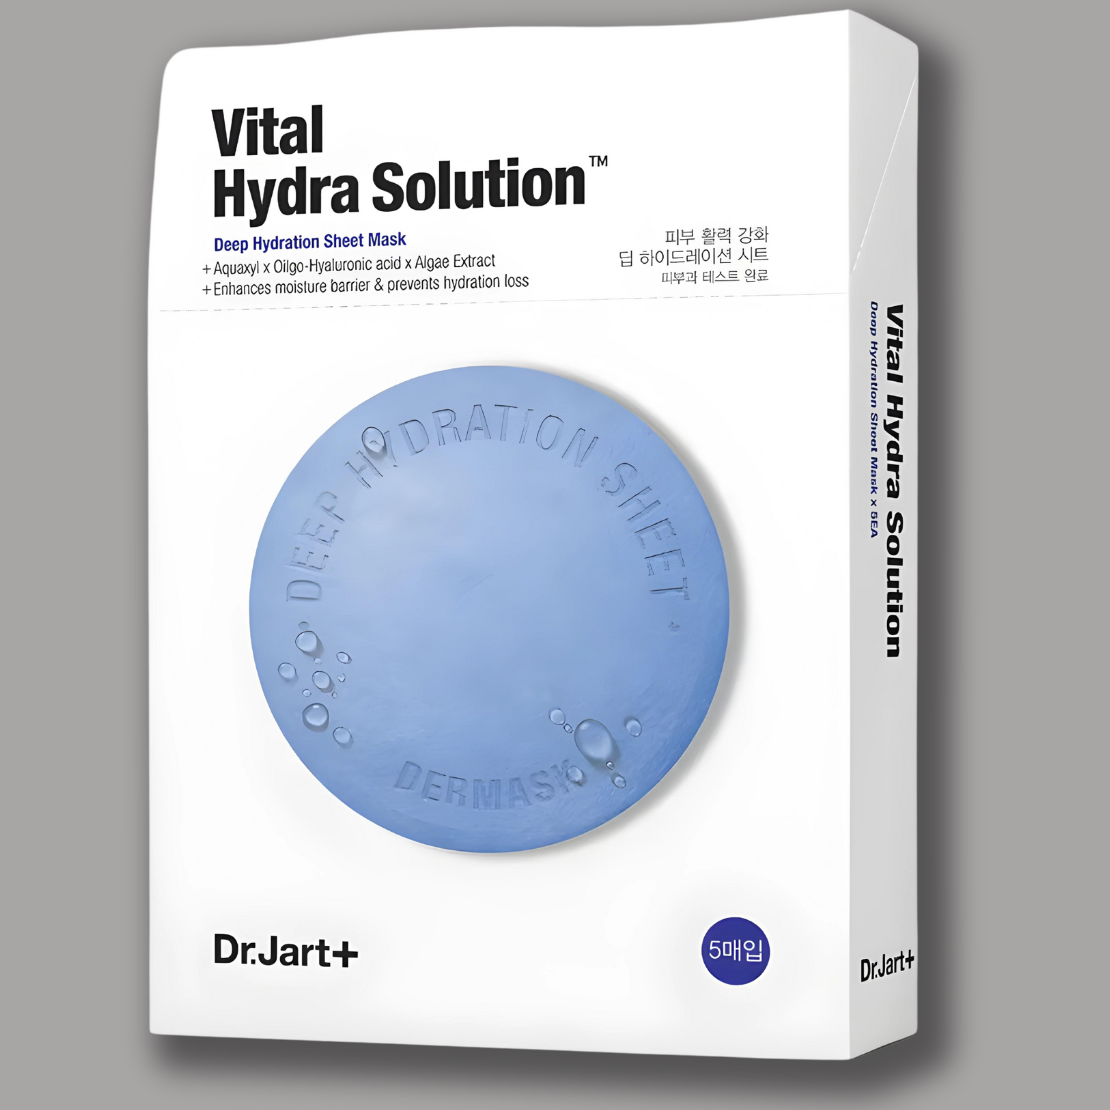 DR JART+ Dermask Vital Hydra solution Deep Hydration Mask (25g)